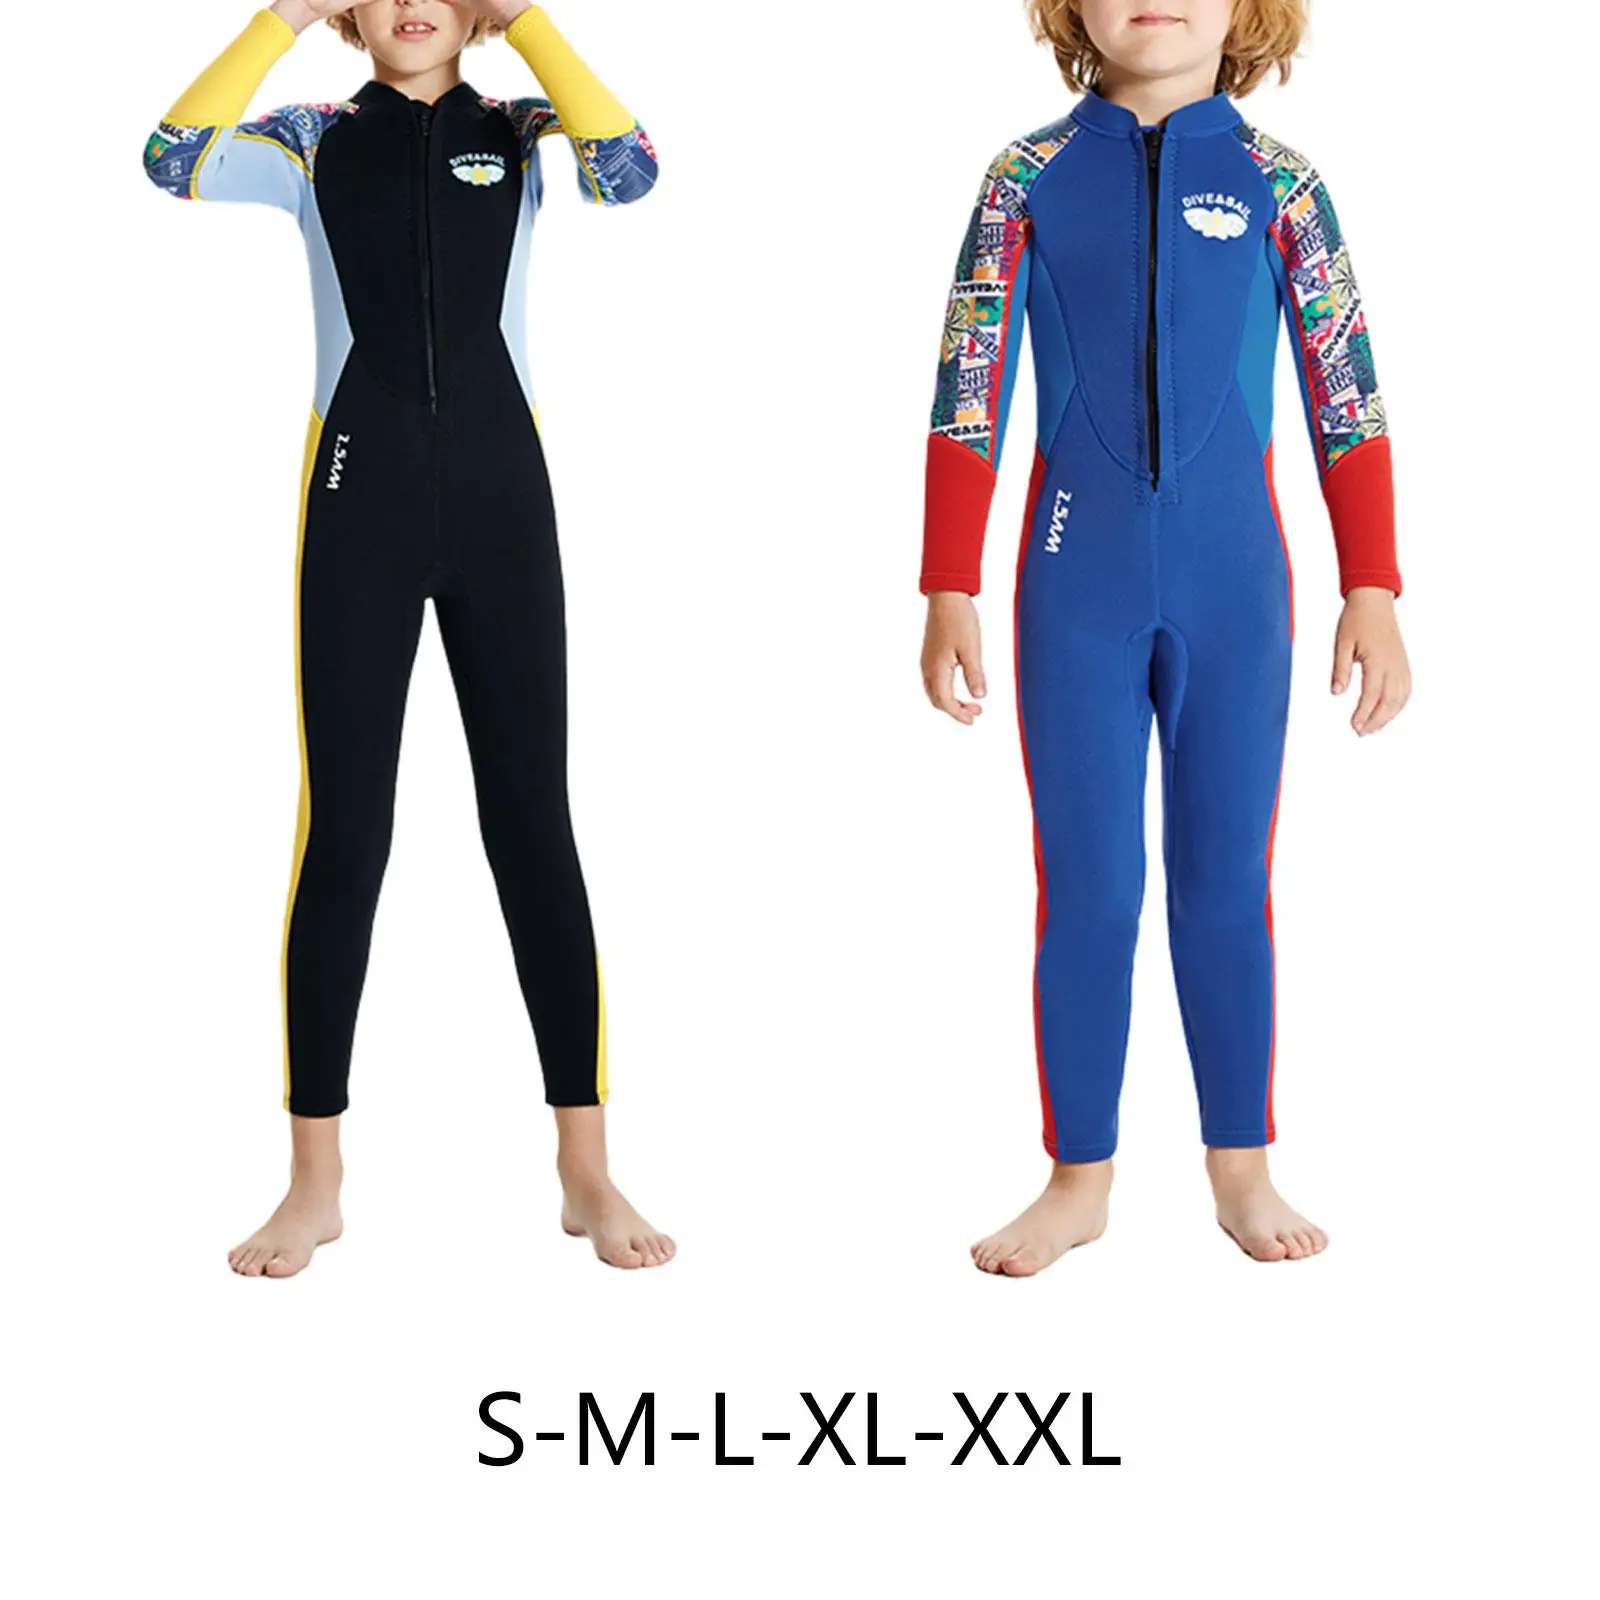 

Детский Гидрокостюм для мальчиков, влажные костюмы, полноразмерные купальники, солнцезащитный костюм, костюм для дайвинга на молнии спереди